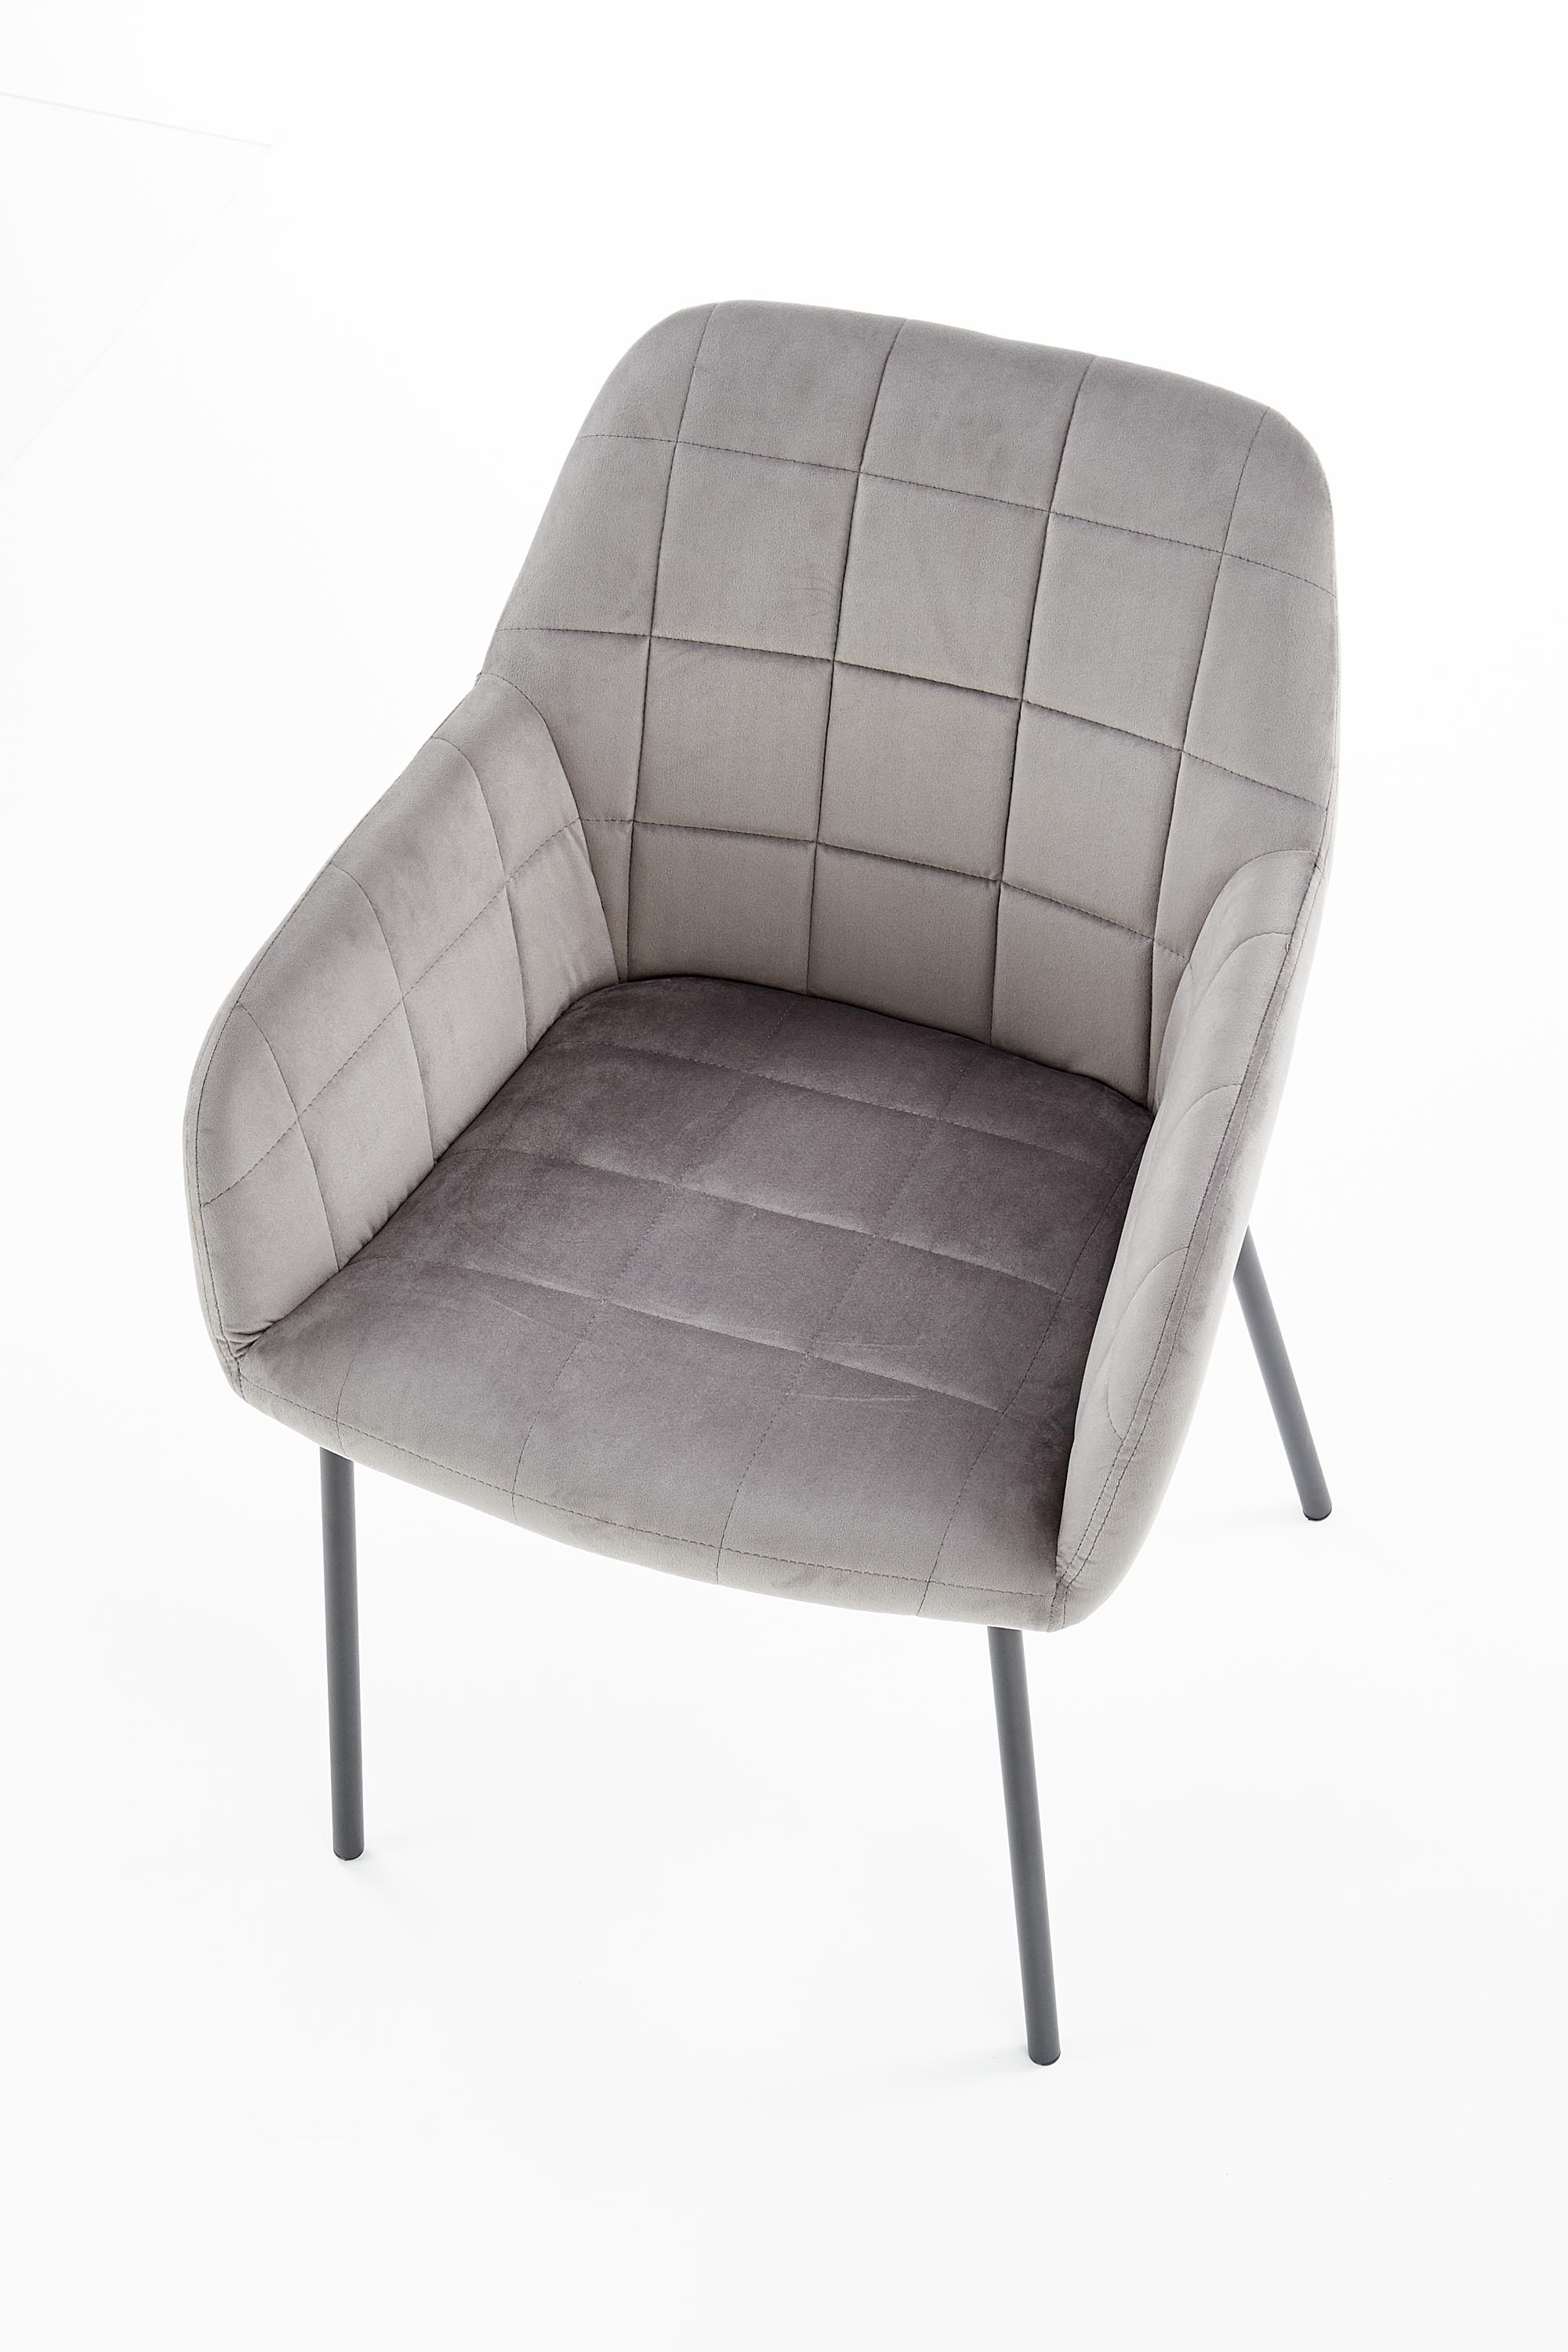 Židle K305 - Popelový / Černý Židle k305 - Popelový / Černý